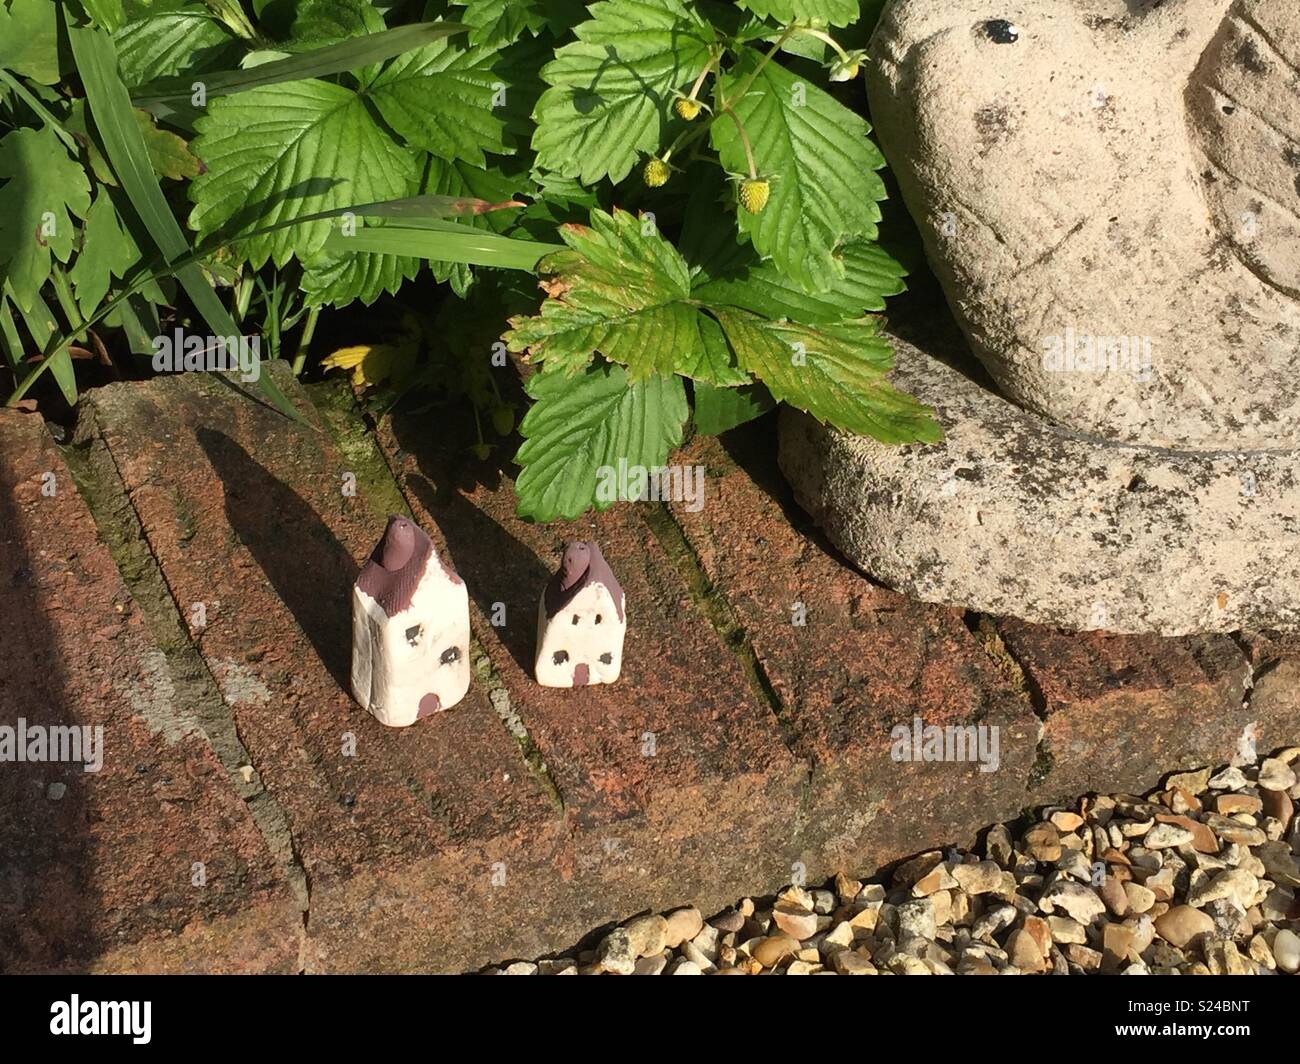 Hay Hadas que viven en estas casas en nuestro jardín. West Yorkshire, Inglaterra. Foto de stock